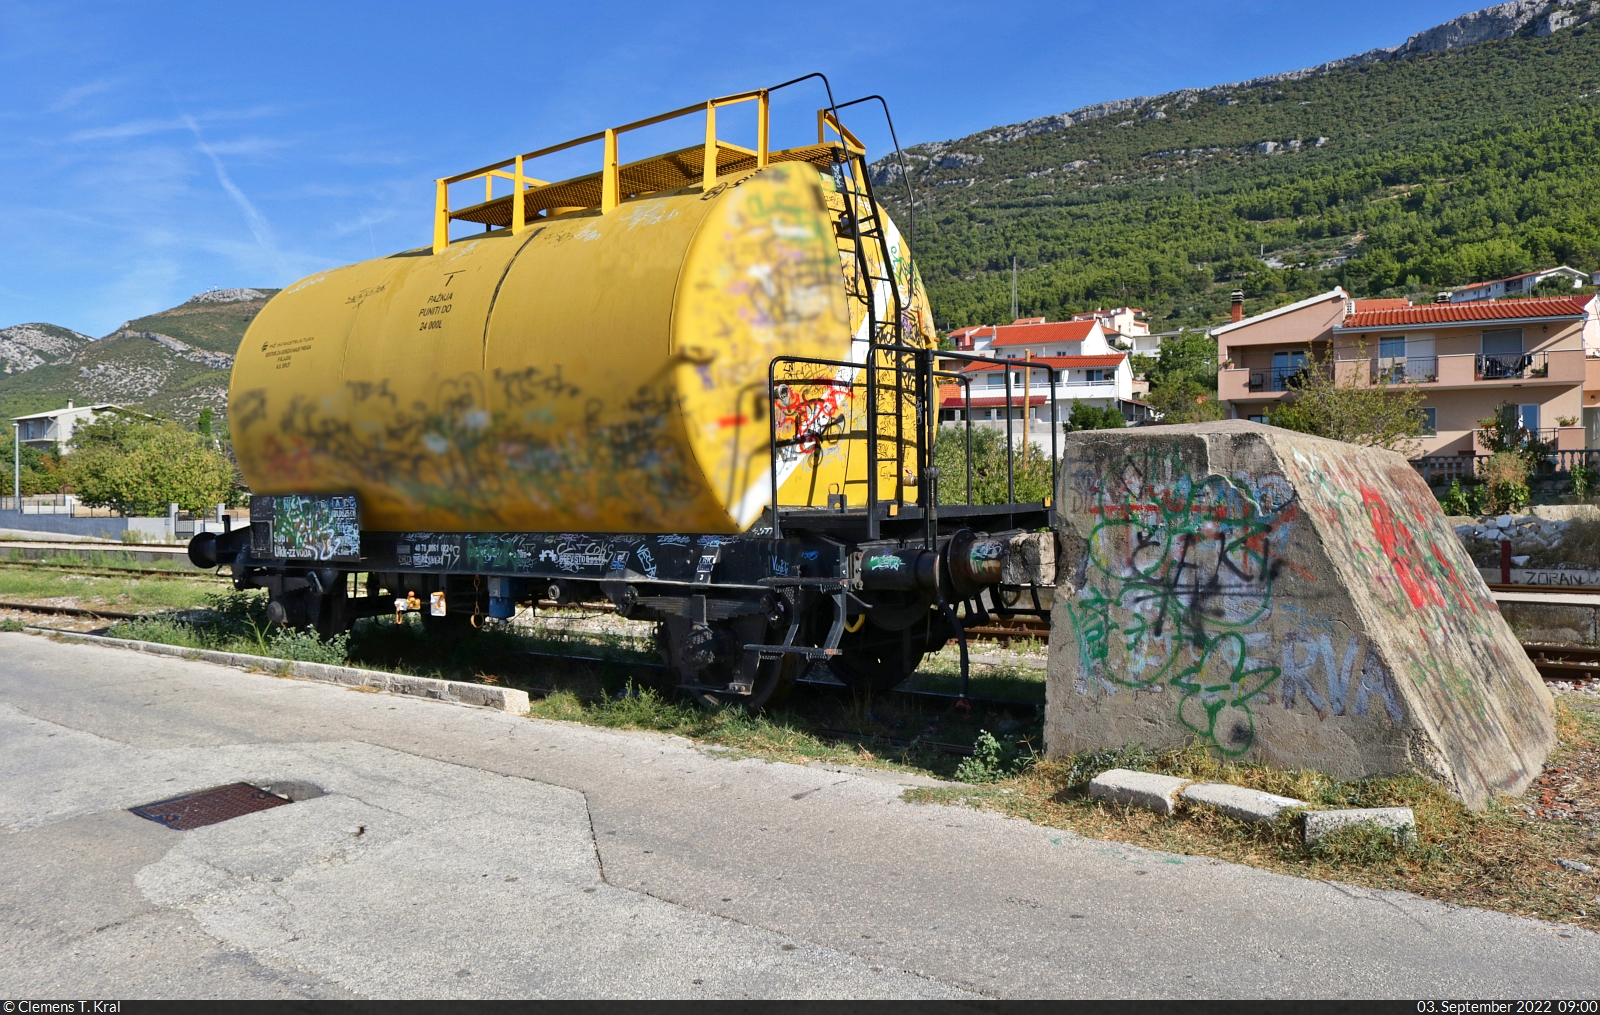 Dieser nicht mehr genau identifizierbare Kesselwagen trägt die Bezeichnung  Ukk-zž  (40 78 9061 xx2). Er ist mit Löschwasser (Kroatisch: voda) gefüllt und steht im Bahnhof Kaštel Stari (HR).

🧰 HŽ Infrastruktura d.o.o.
🕓 3.9.2022 | 9:00 Uhr

(Selbstfreischaltung wegen Graffiti. Danke an die Admins.)